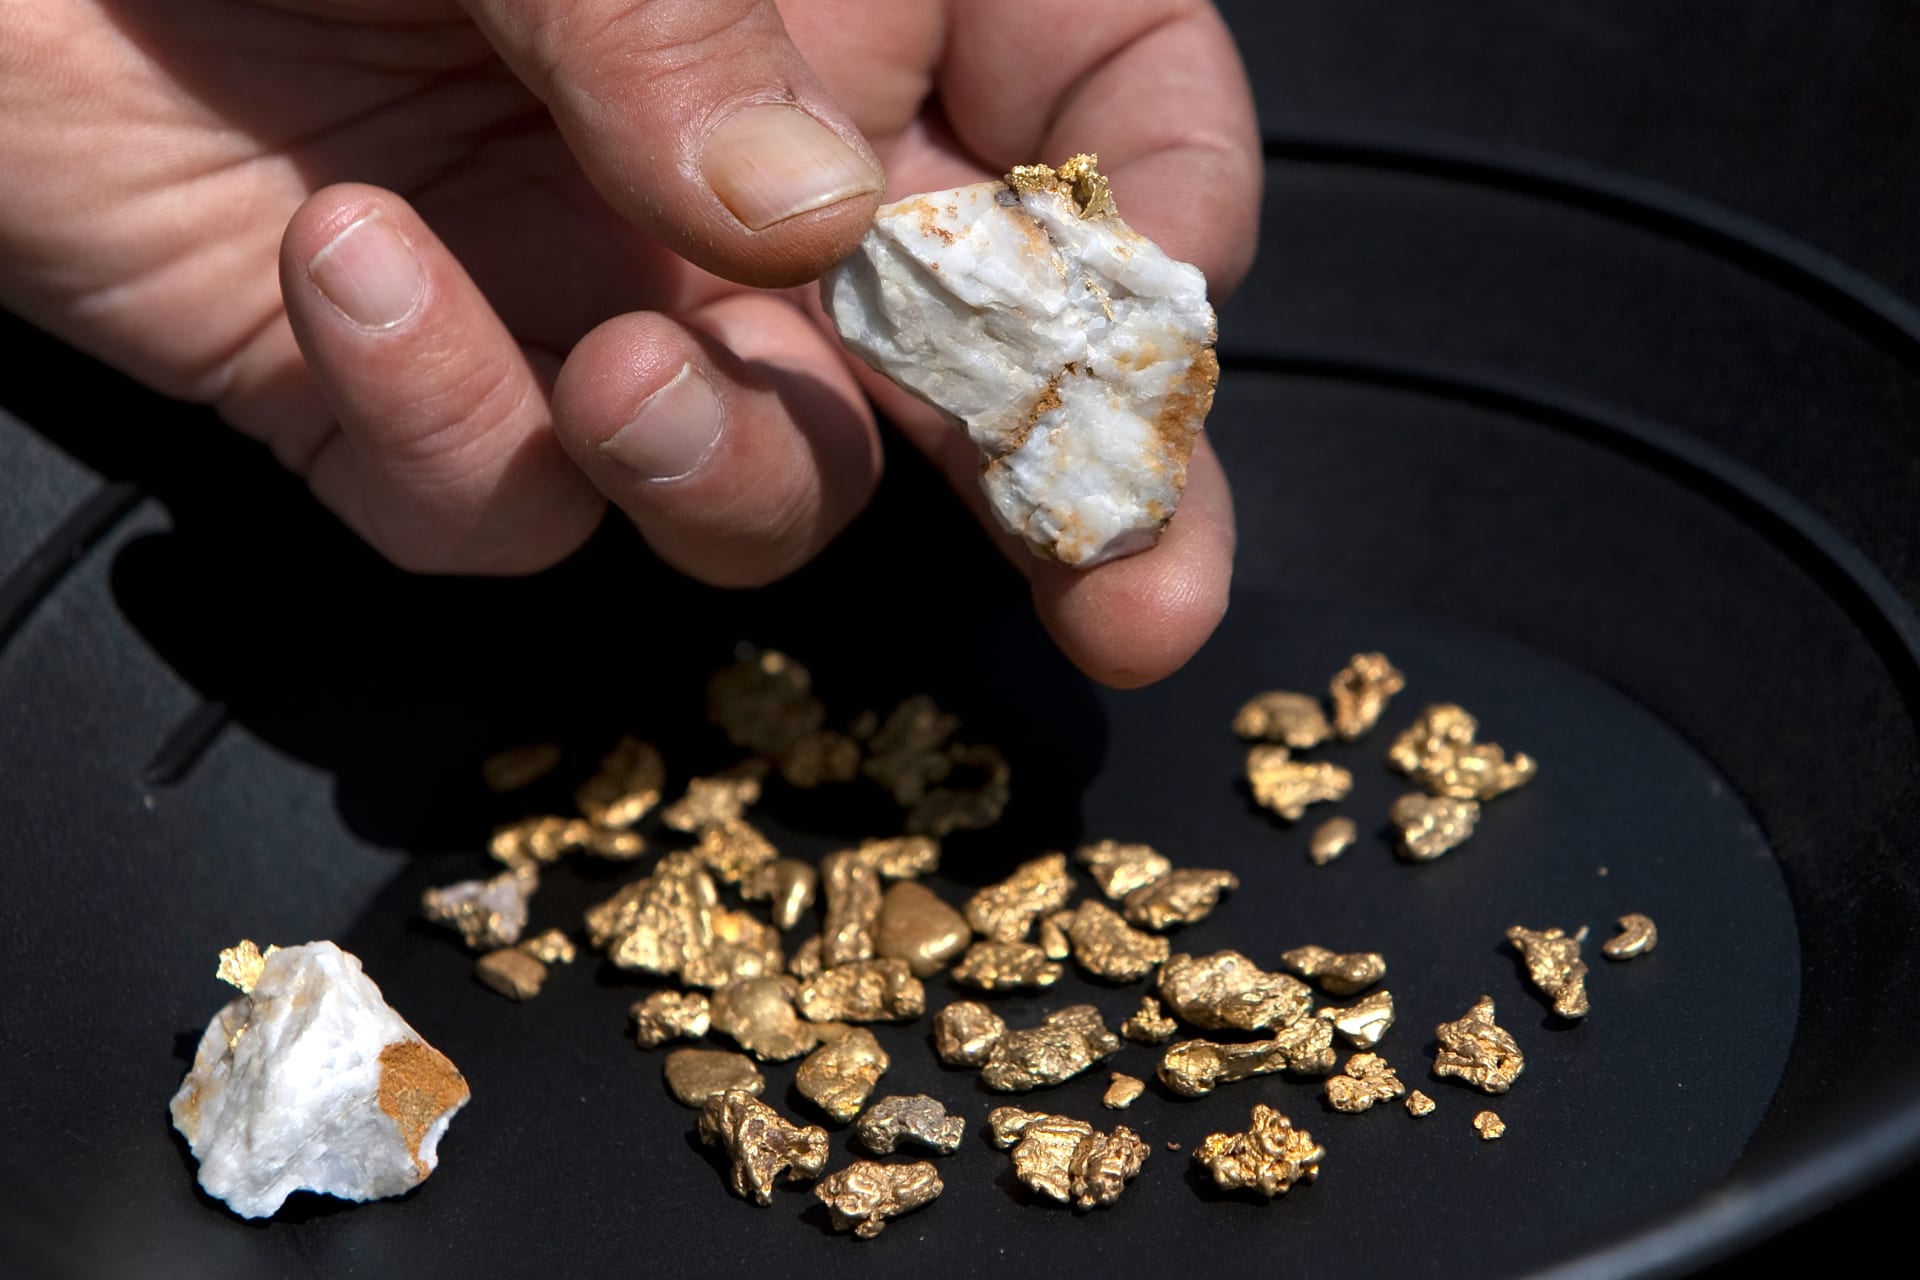 مصر تعلن نتائج أول مزايدة للتنقيب عن الذهب منذ 8 سنوات الأسبوع المقبل